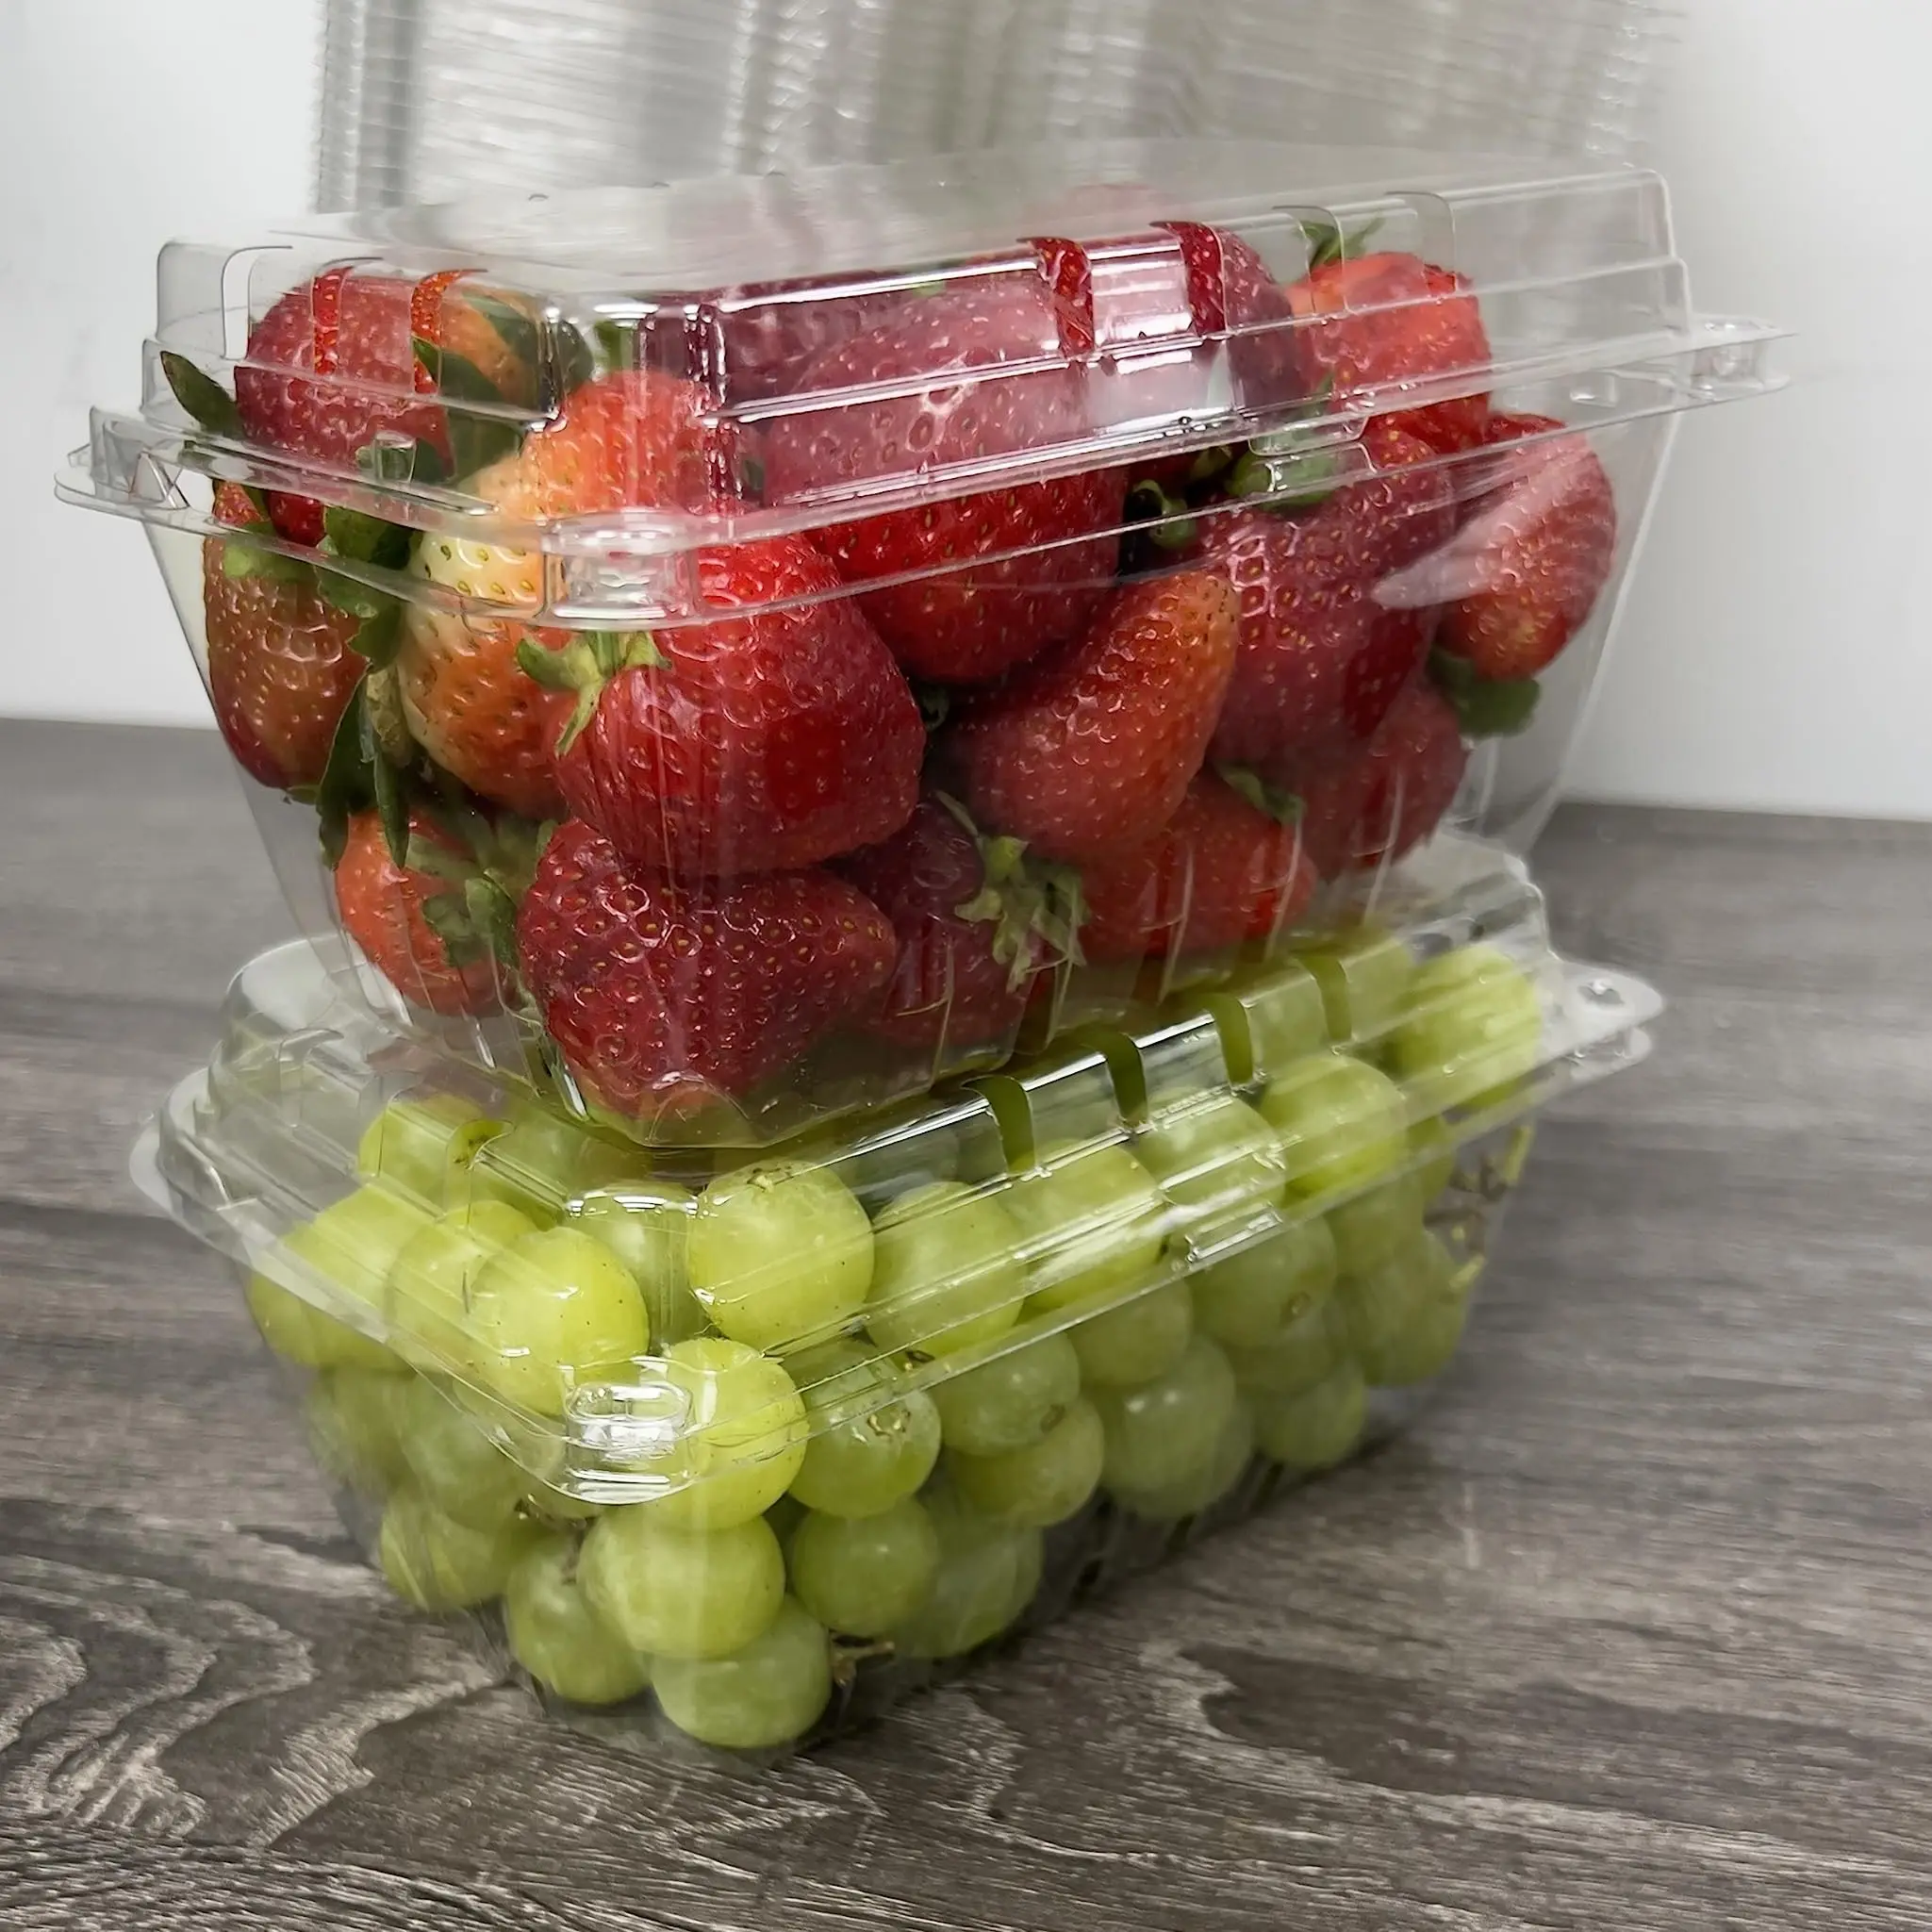 1LBフルーツクラムシェルパッケージクリアPETプラスチックボックスフルーツトマトグレープストロベリーパンネットコンテナ新鮮な農場用